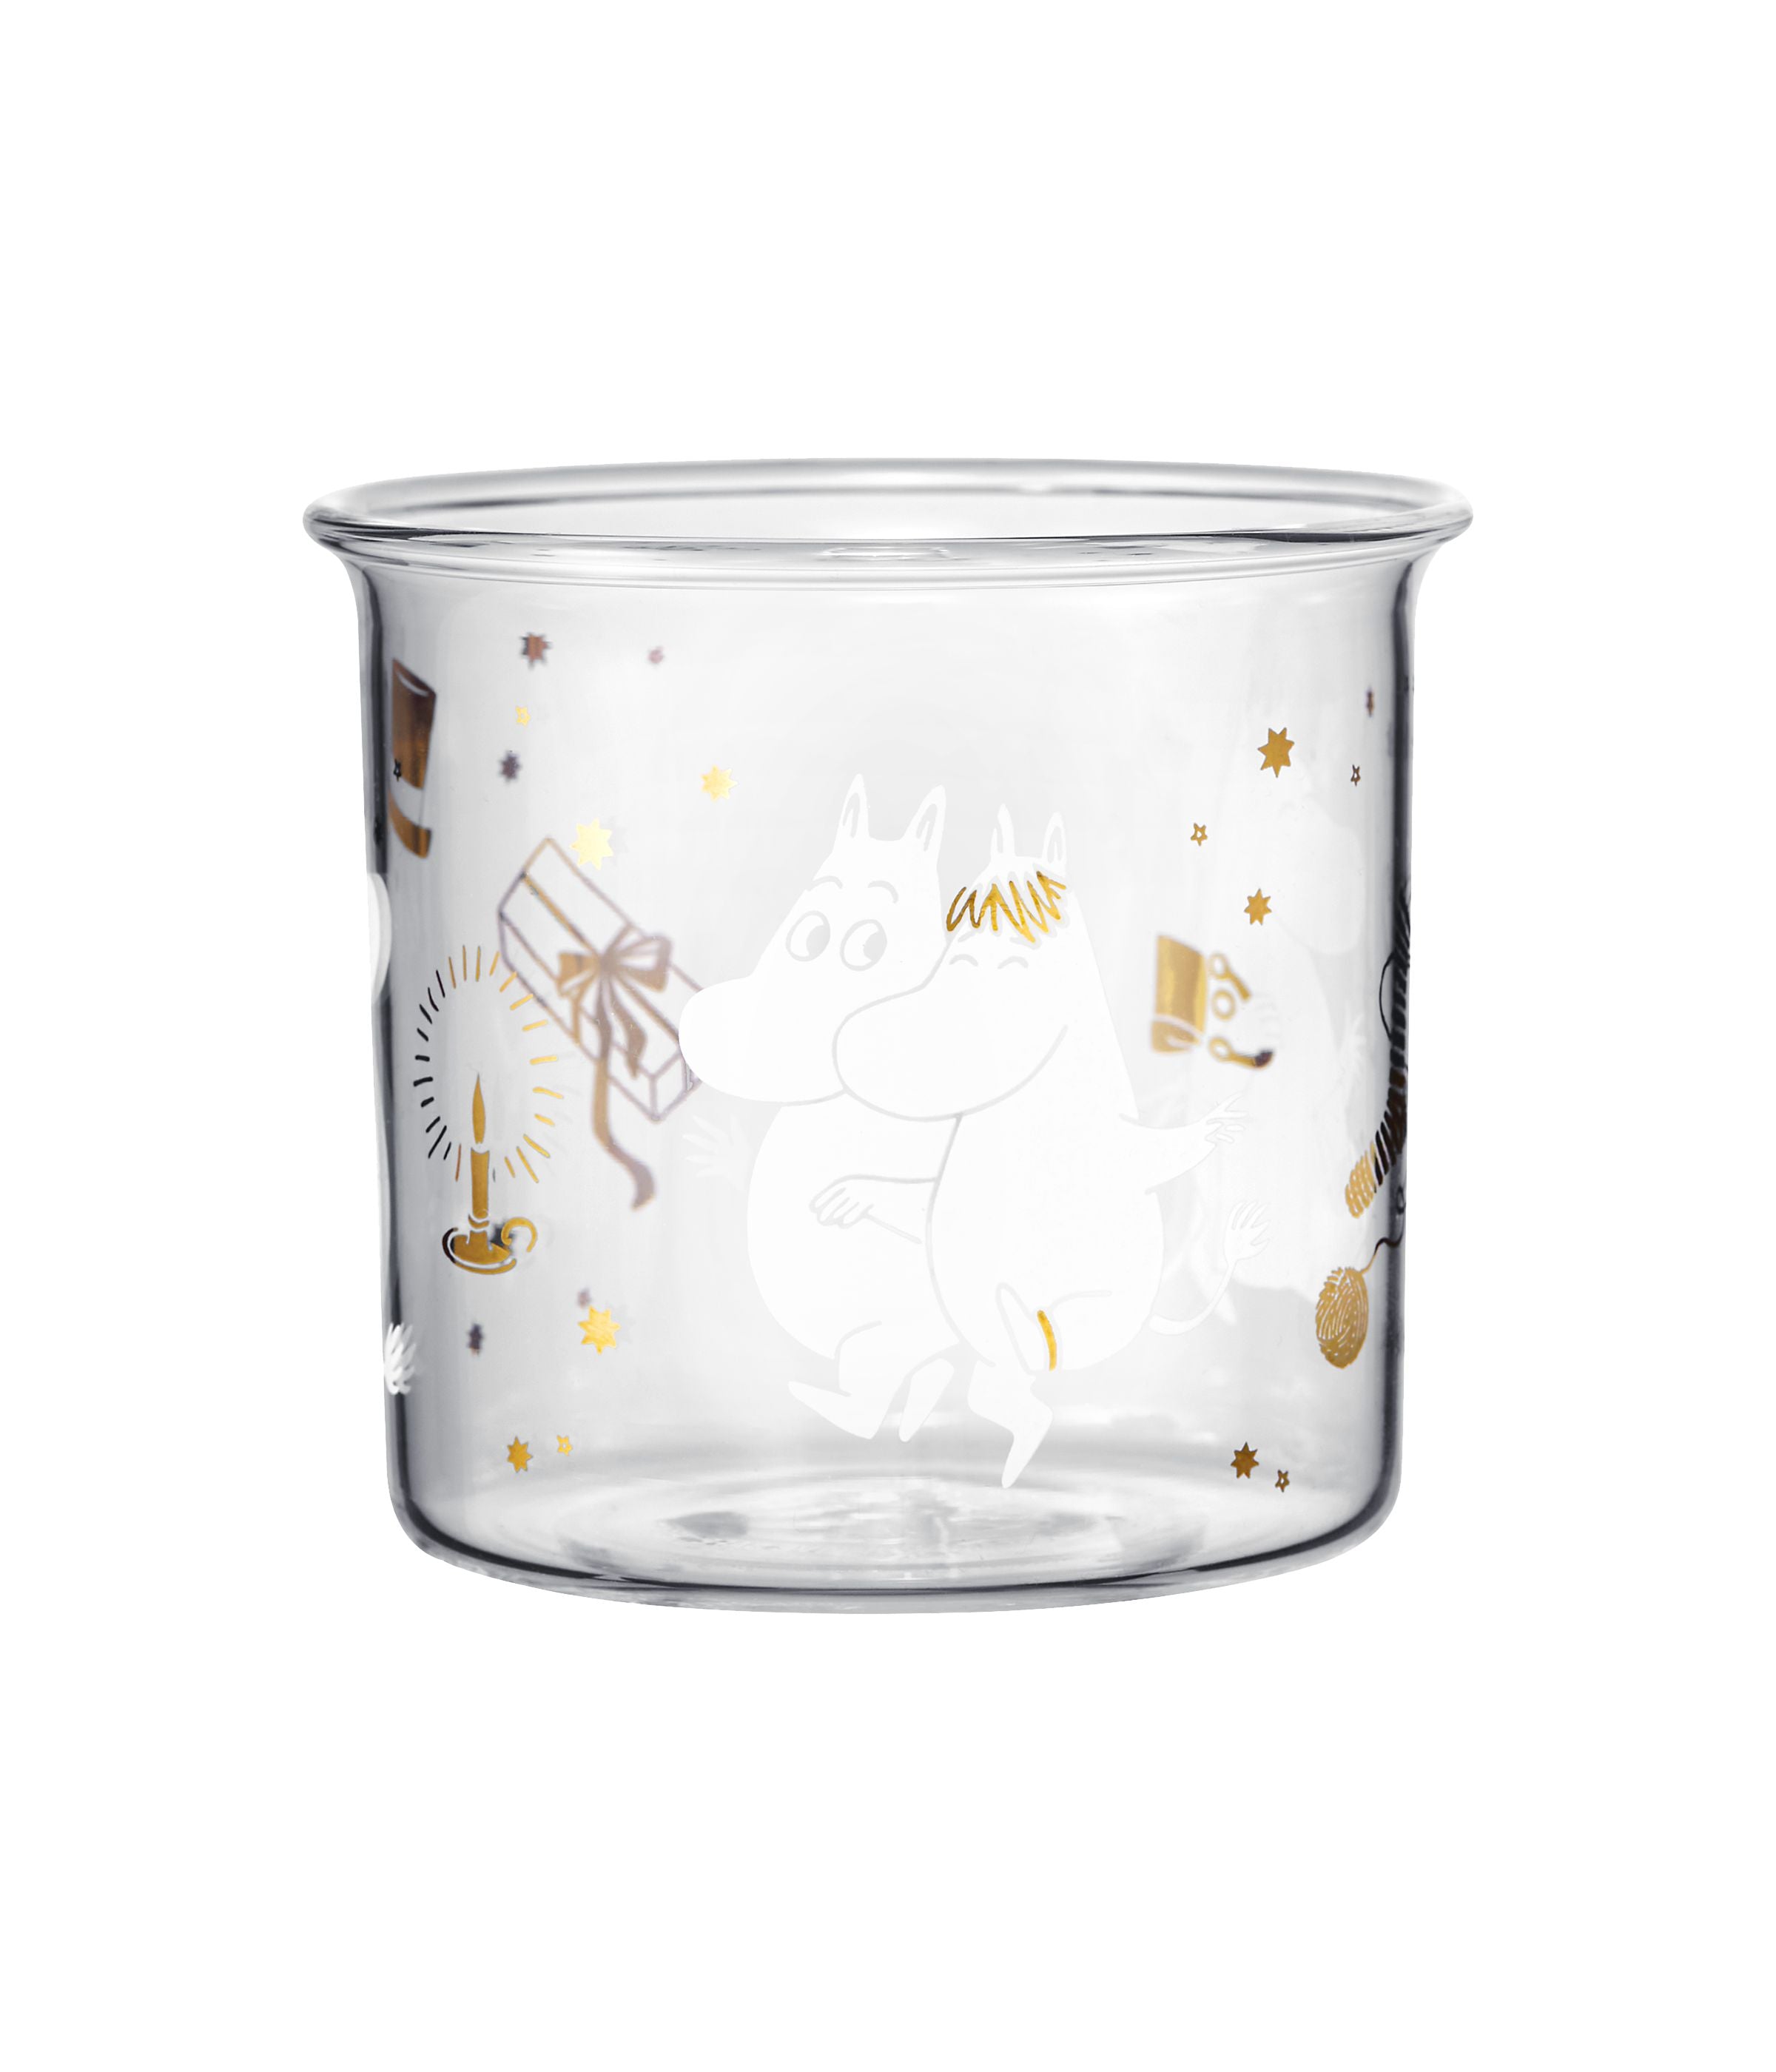 Muurla Moomin en verre Mug étincelante étoiles